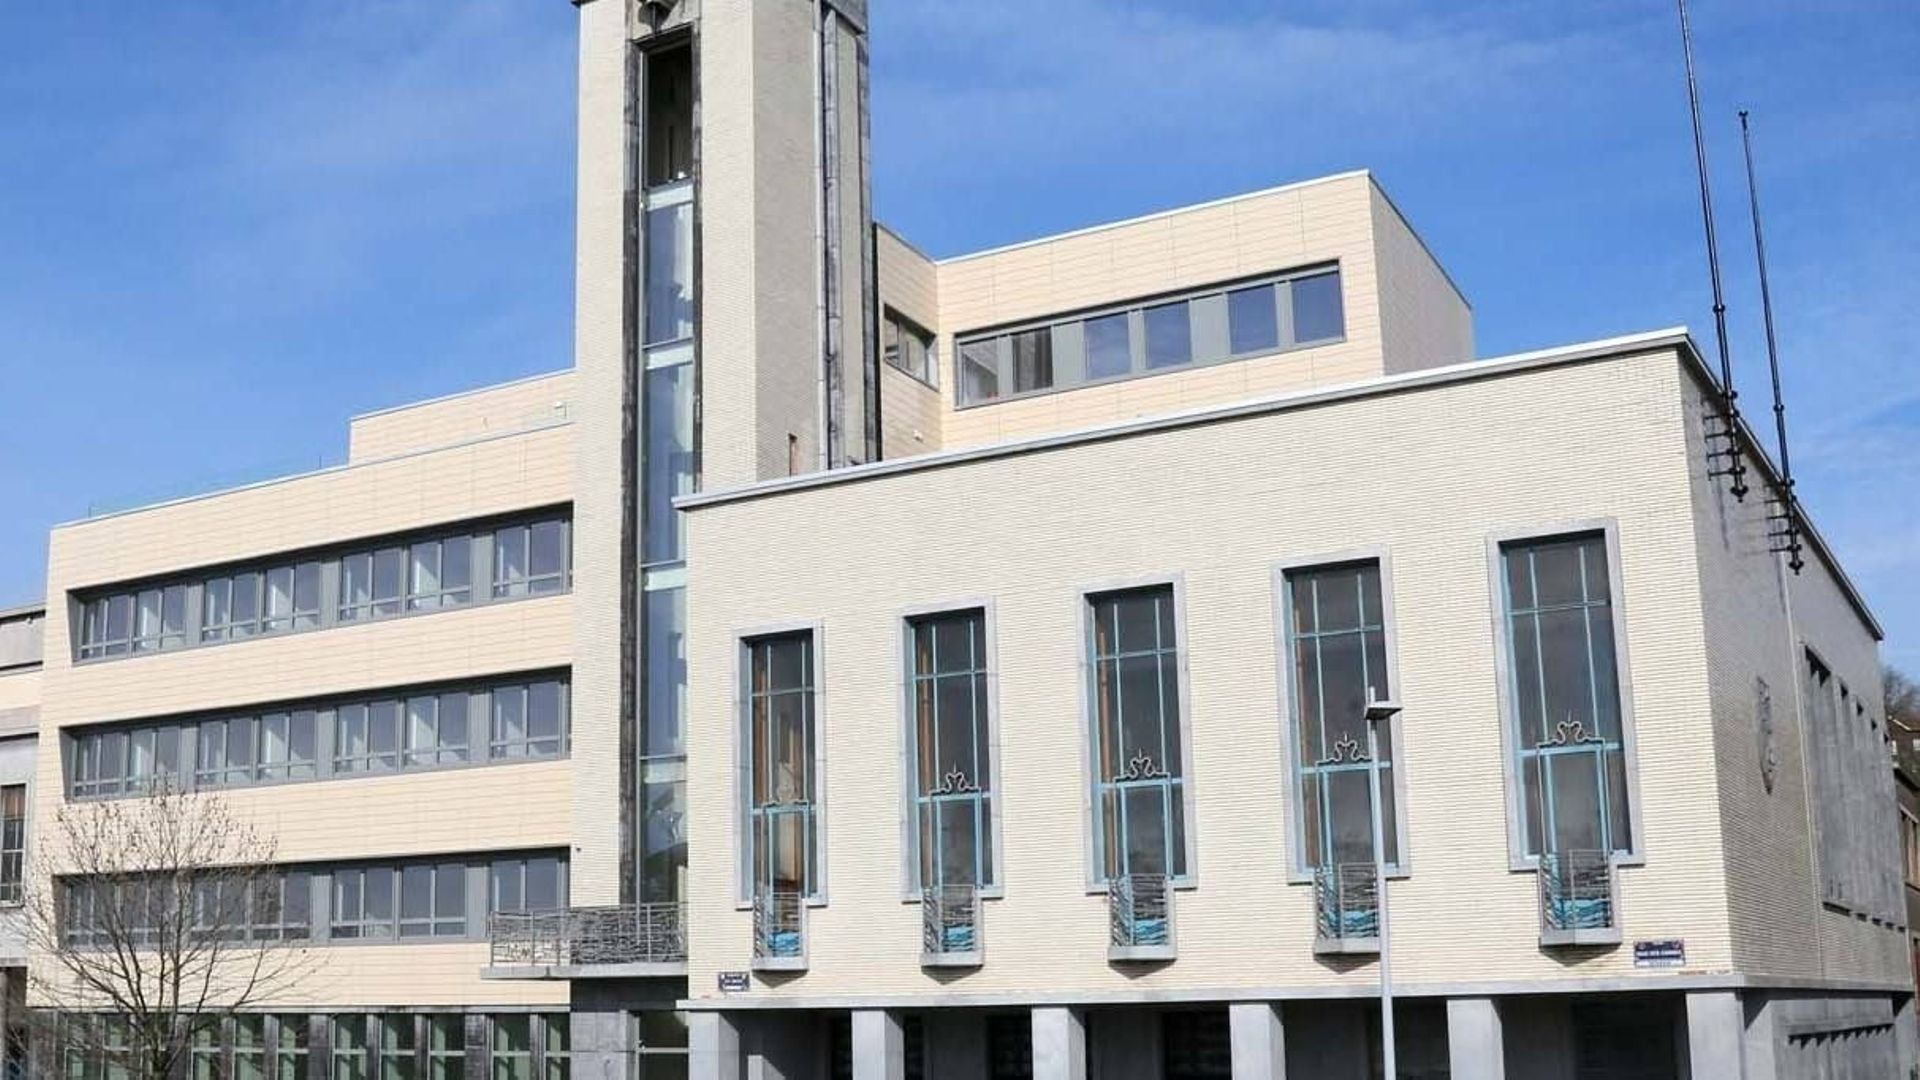 Plus de 6 millions d'investissement pour la Maison Erasmus de Seraing